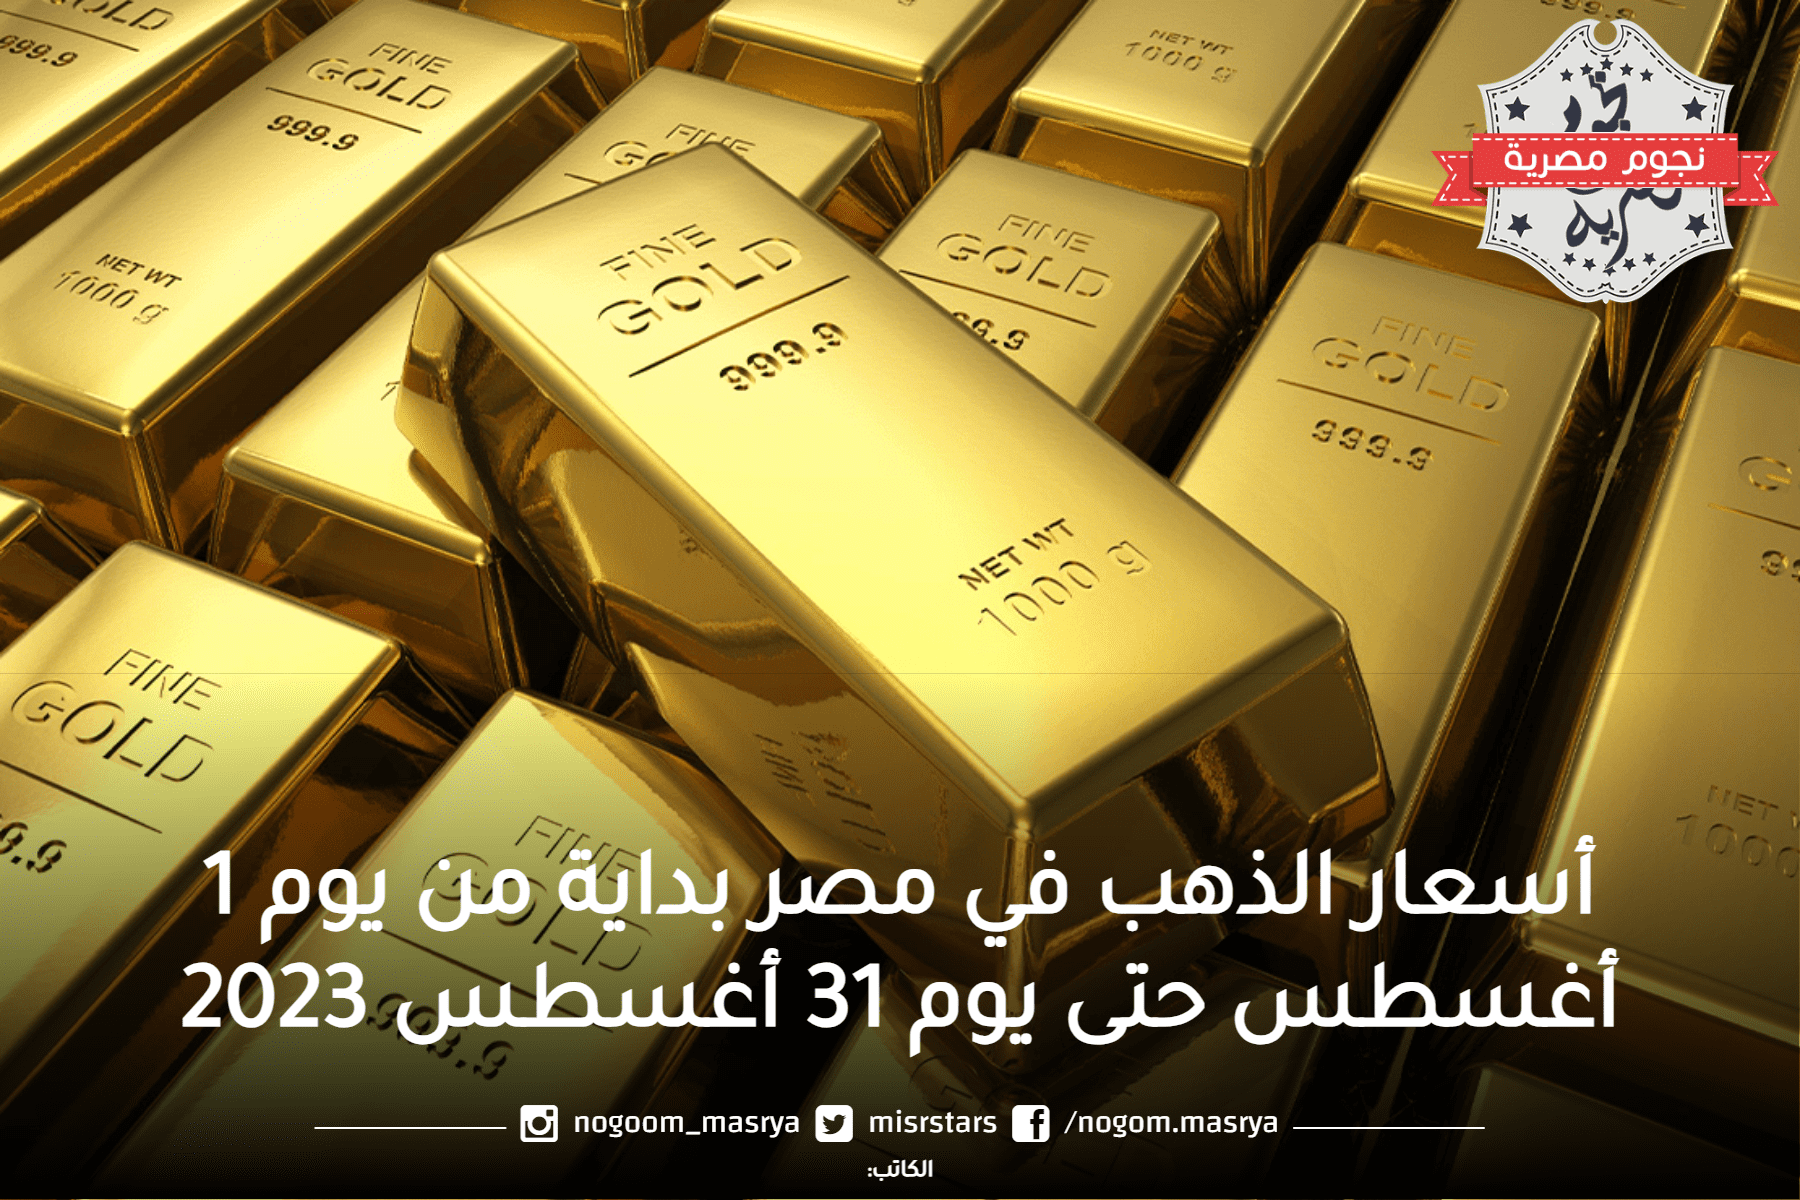 السجل التاريخي أسعار الذهب في مصر في شهر أغسطس 2023 من يوم 1 حتى يوم 31.